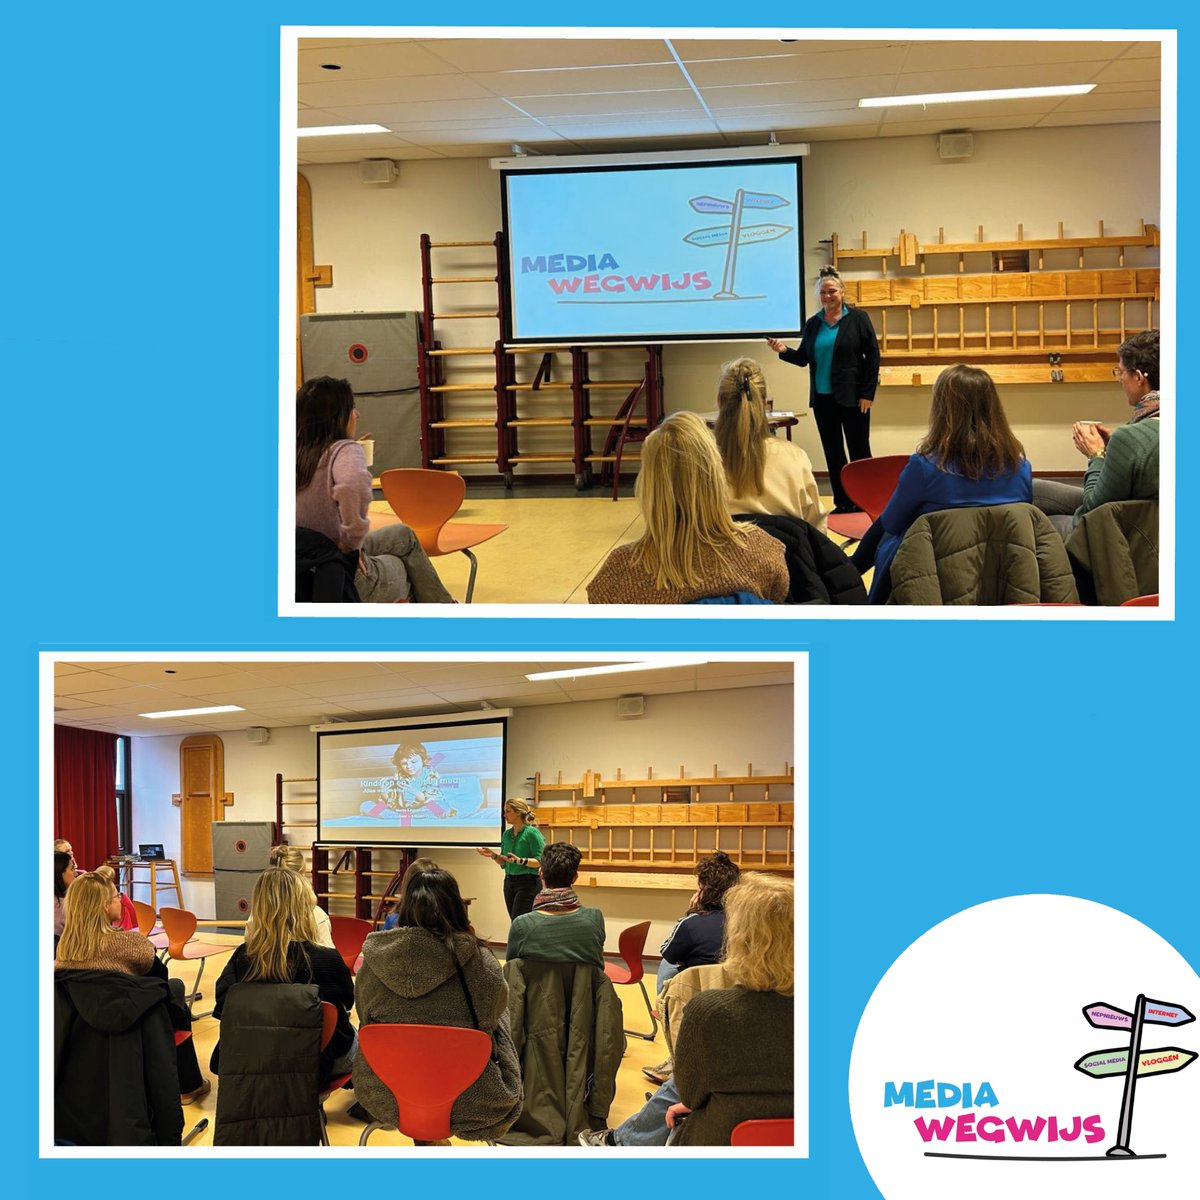 Vorige week heeft de directeur van Mediawegwijs Ilse Godtschalk samen met Marije Lagendijk (@JeugdenMedia) een groep ouders gesproken van basisschool Augustinus. Mediawegwijs geeft op deze school al jaren lessen over #digitalegeletterdheid en #mediawijsheid. #mediaopvoeding